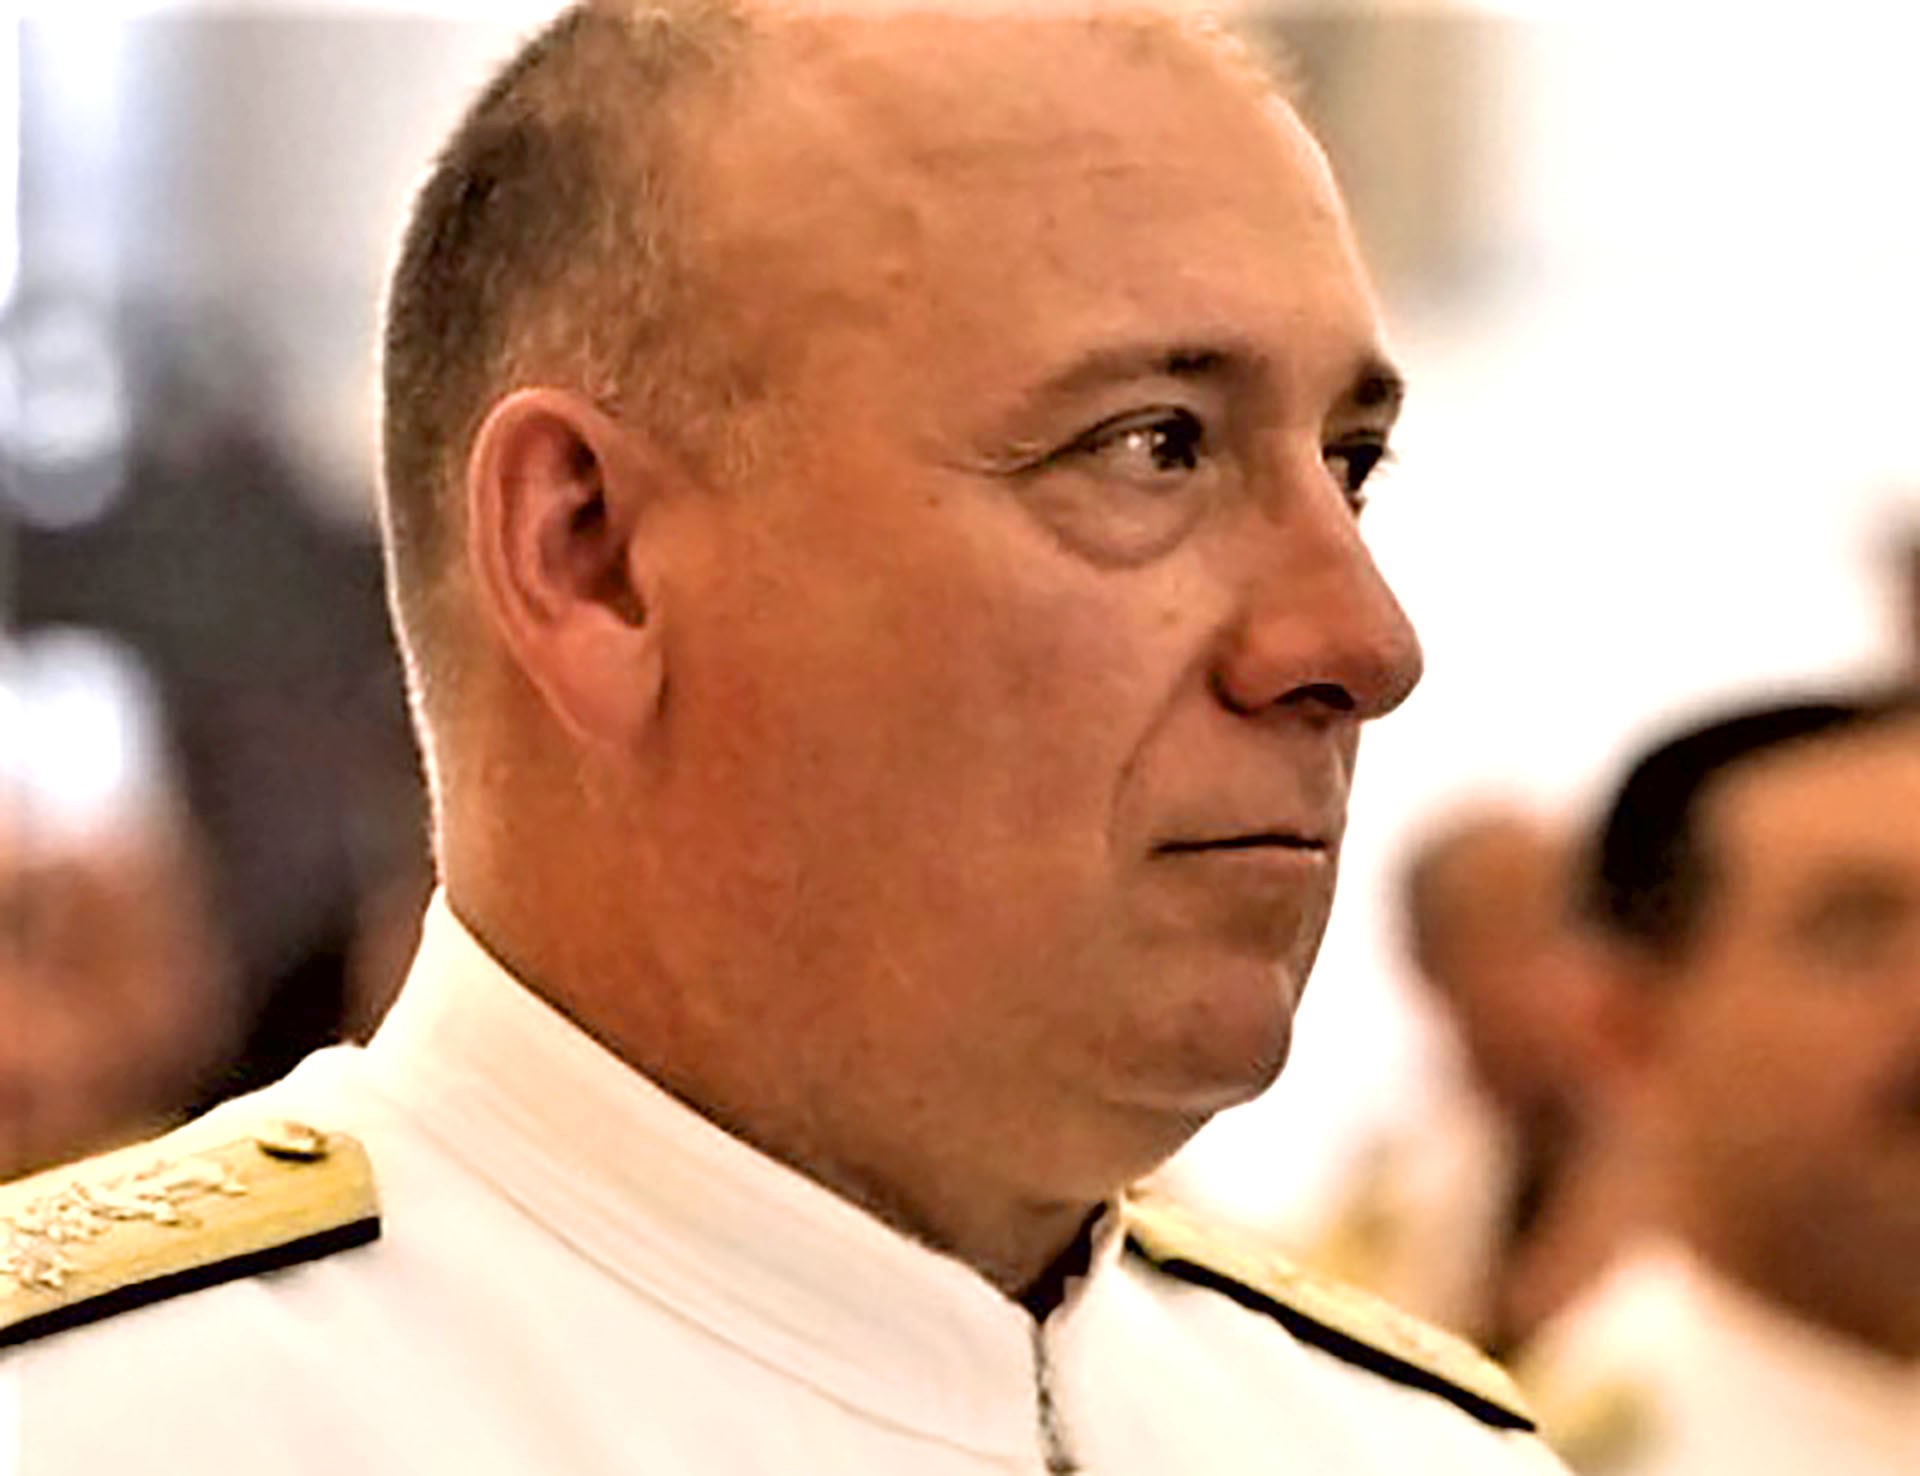 Almirante Diego Alfredo Molero Bellavia